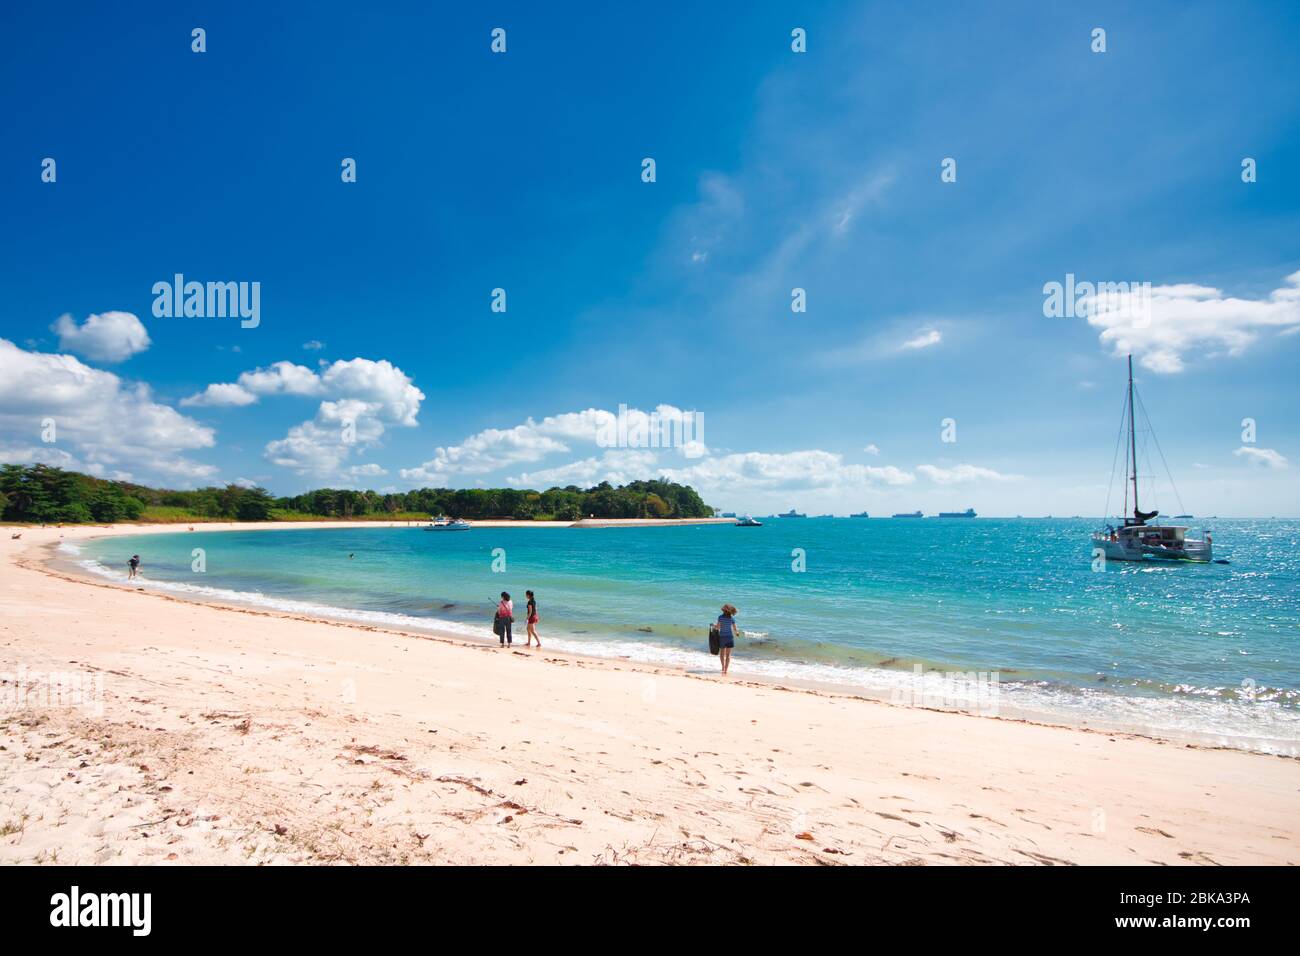 Una vista panoramica sul mare e sulla spiaggia dell'isola di St John, la più grande delle isole meridionali di Singapore. Foto Stock